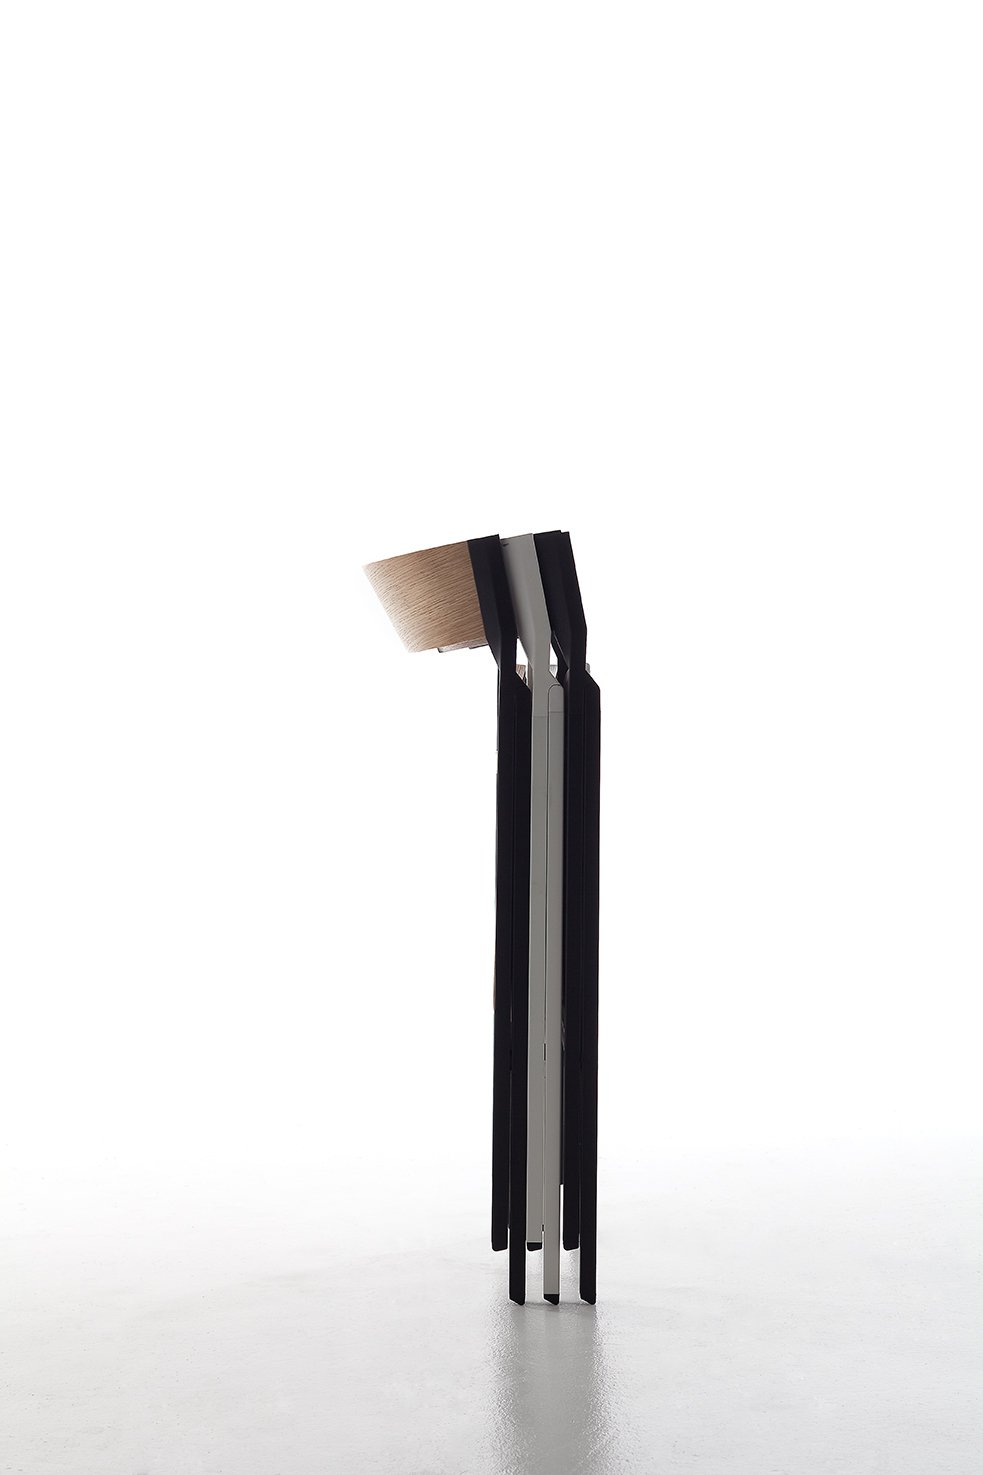 Klapp Folding Chair  from Arrmet, designed by Steffen Kehrle